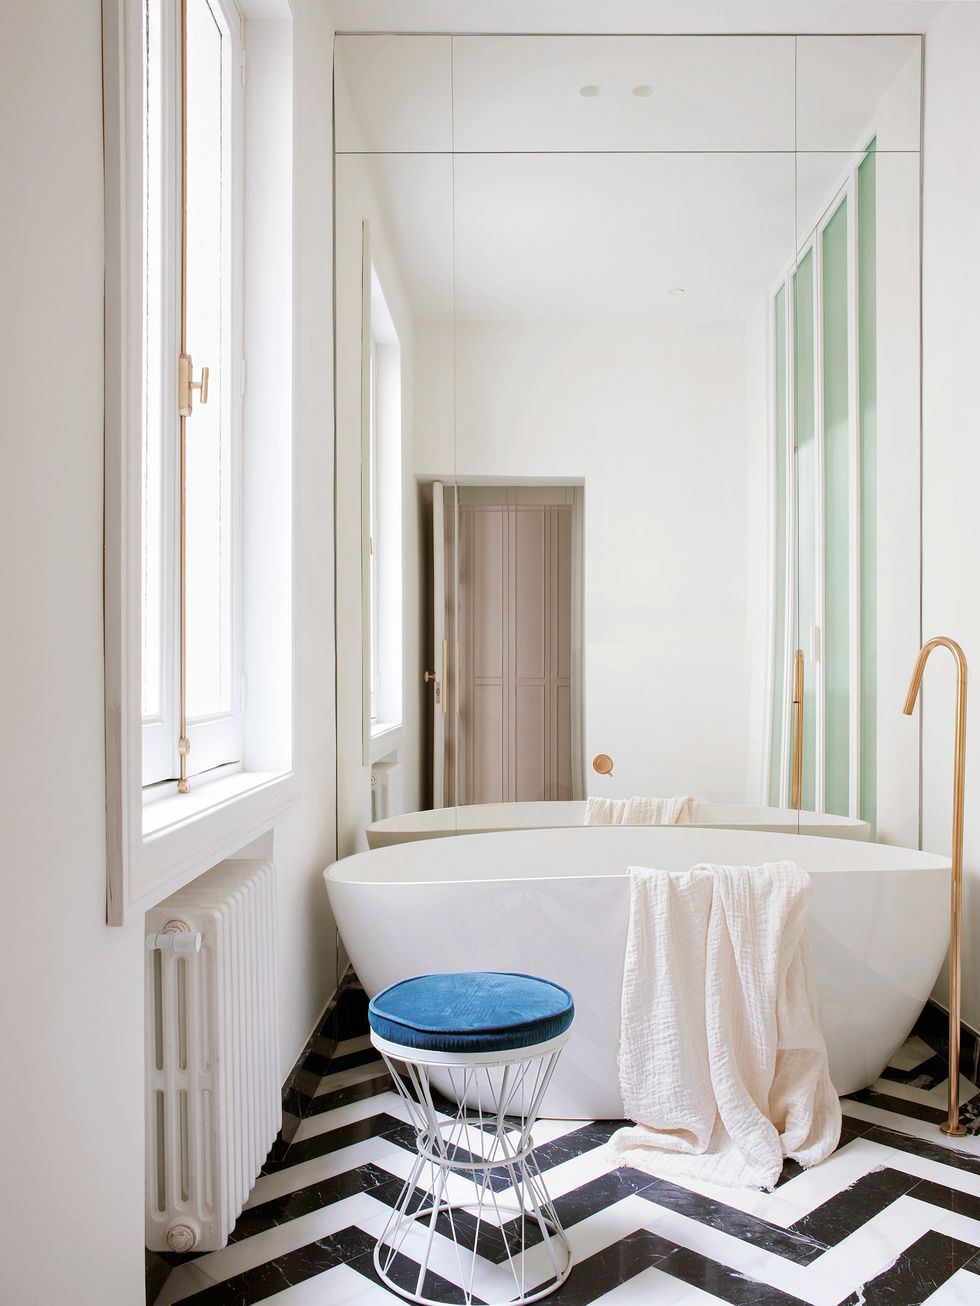 Phòng tắm nhỏ nhưng lại tạo cảm giác siêu rộng nhờ bức tường ốp gương kín từ khu vực trần đến sàn nhà. Bồn tắm đơn giản nhưng thanh lịch với vòi nước bằng vàng đồng sang chảnh.